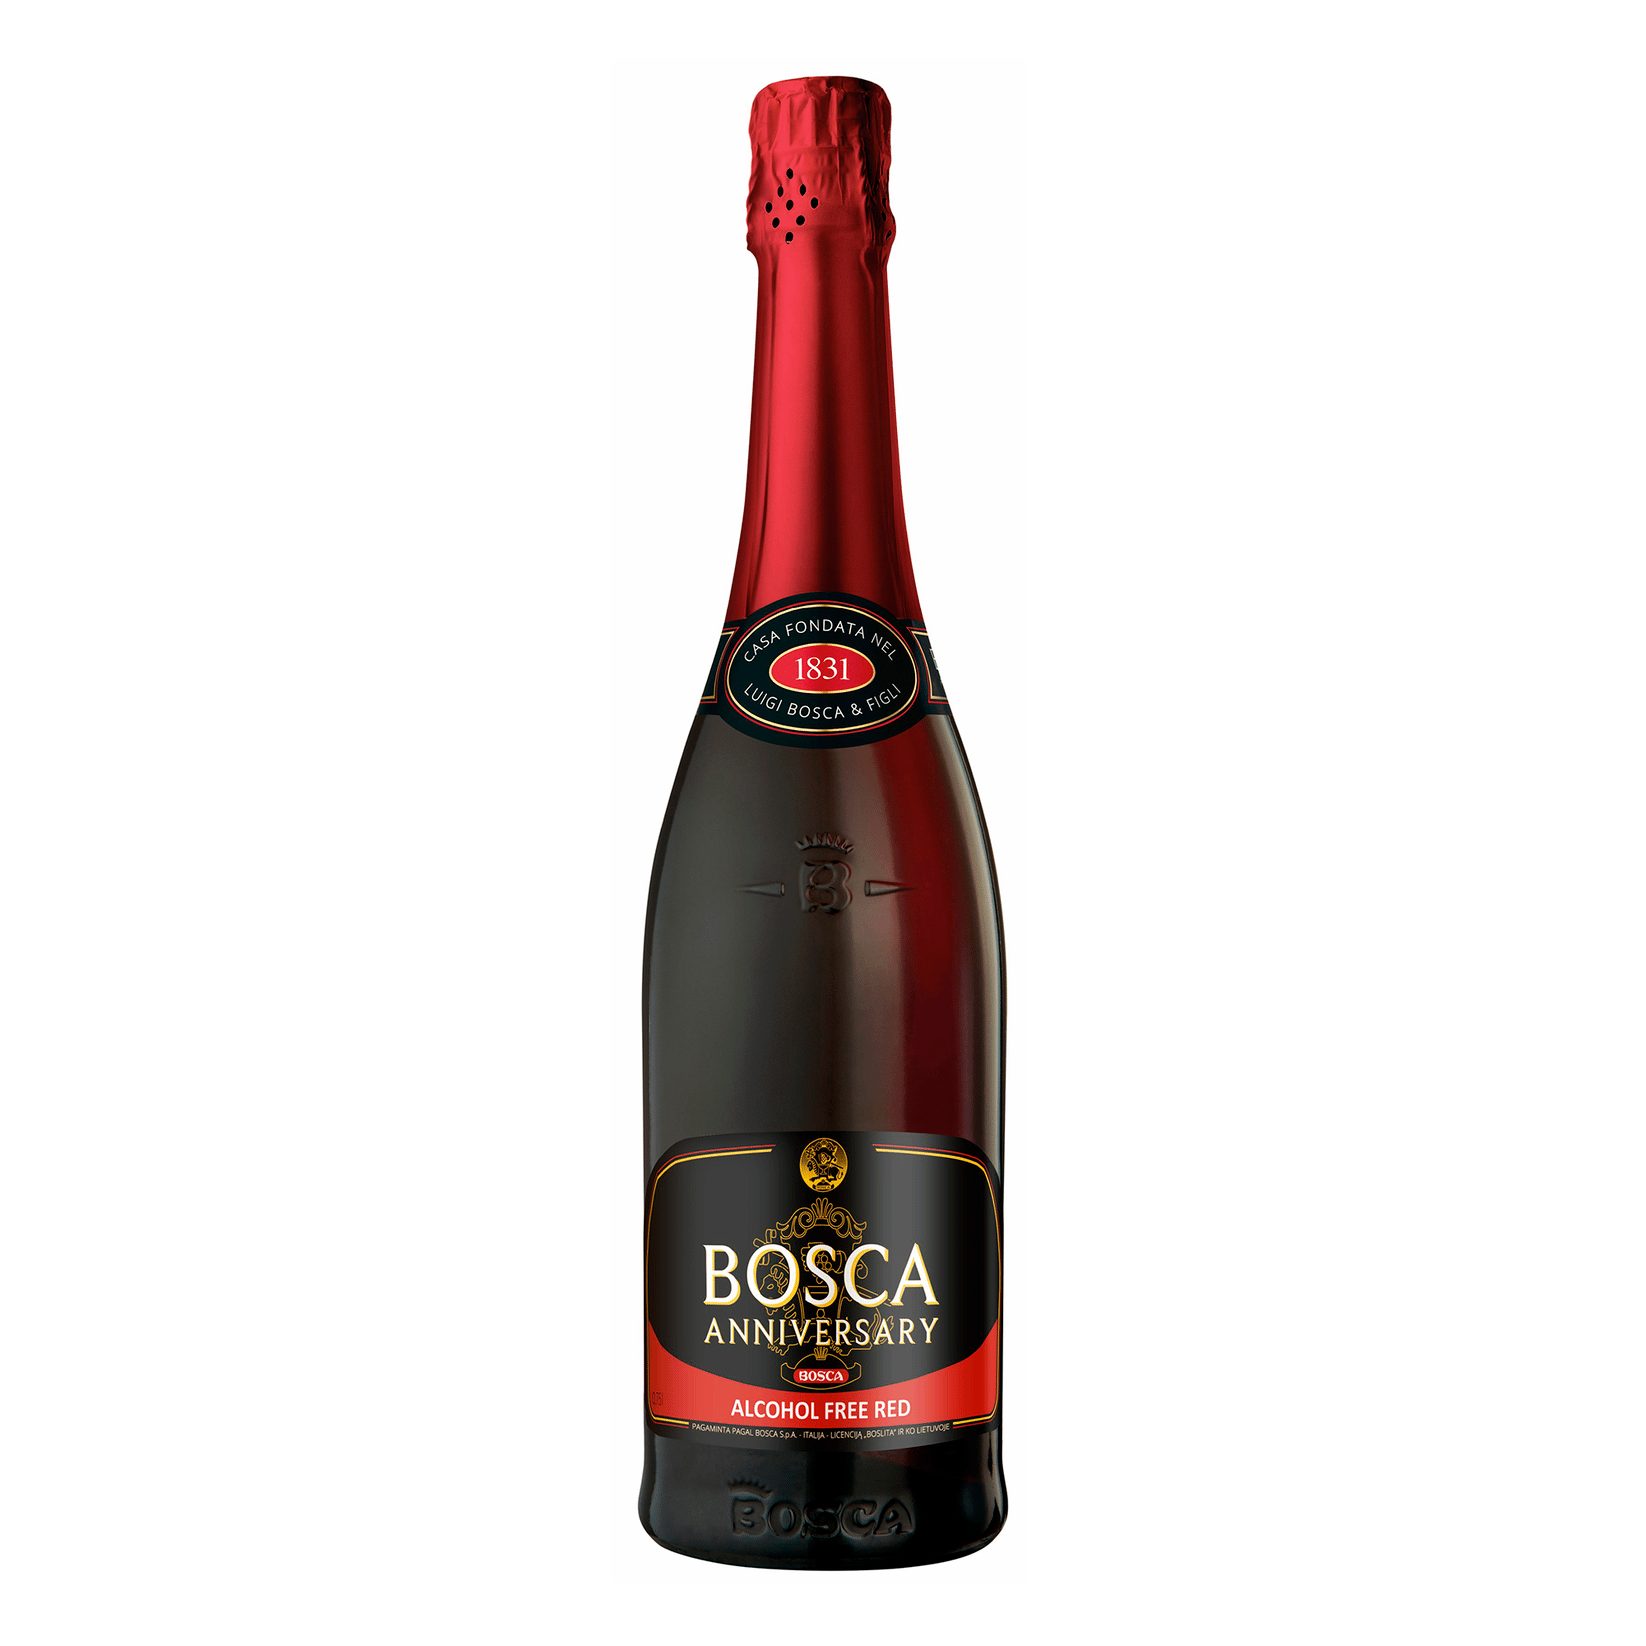 Боско сладкое. Вино игристое Bosca Anniversary. Красное игристое вино Боско. Bosca красное вино игристое. Боско красное вино игристое сладкое.